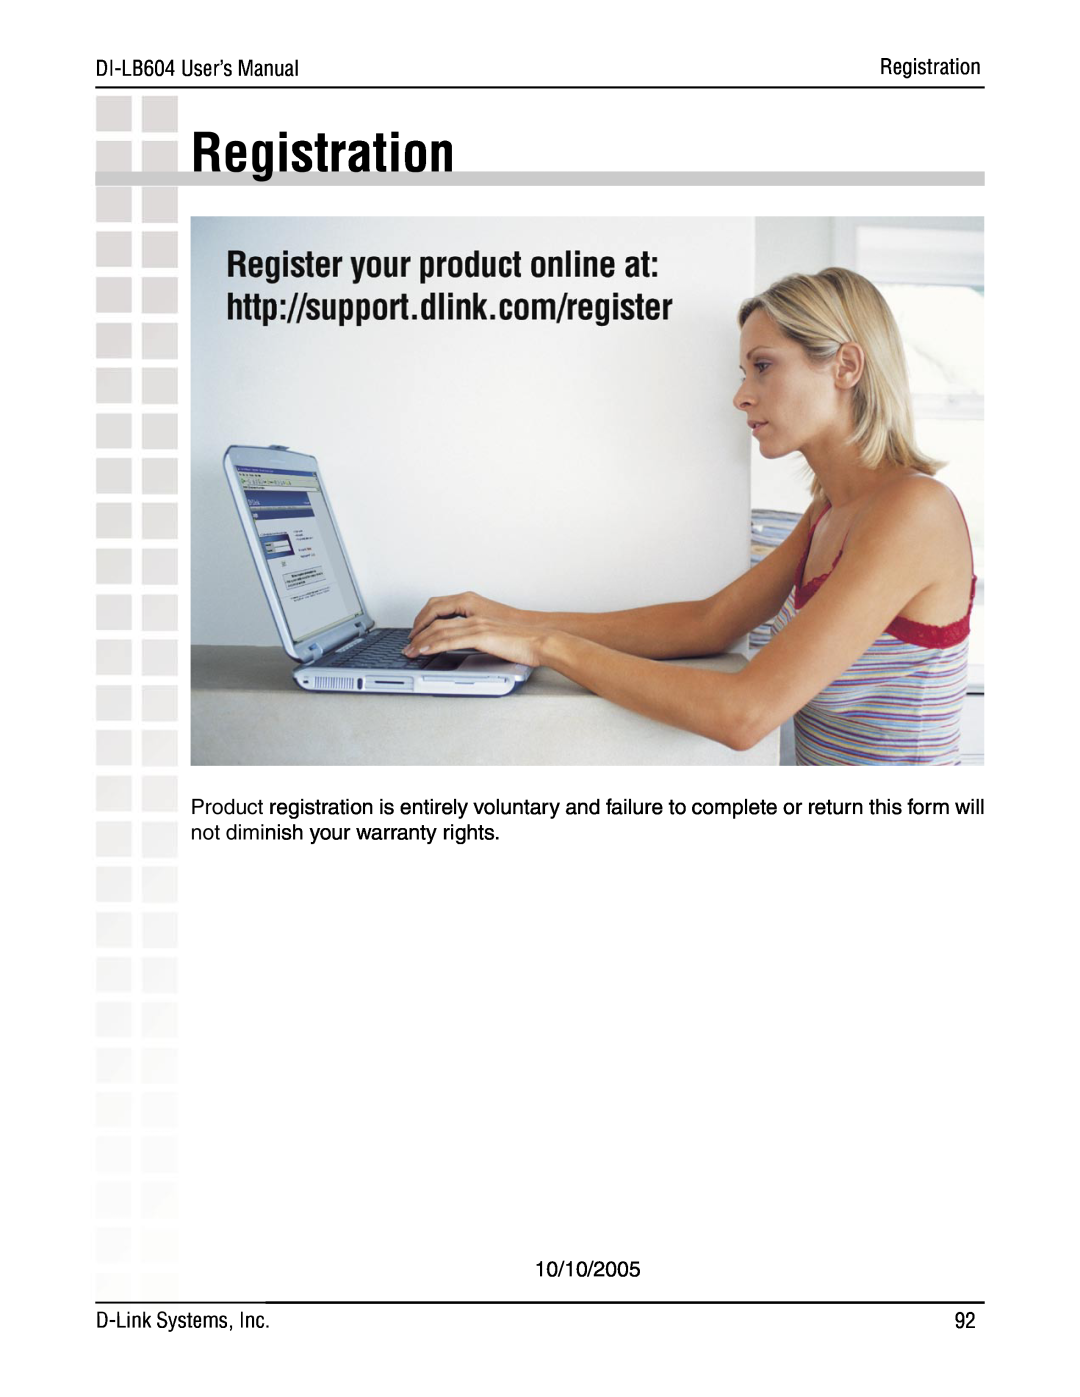 D-Link DI-LB604 manual Registration 